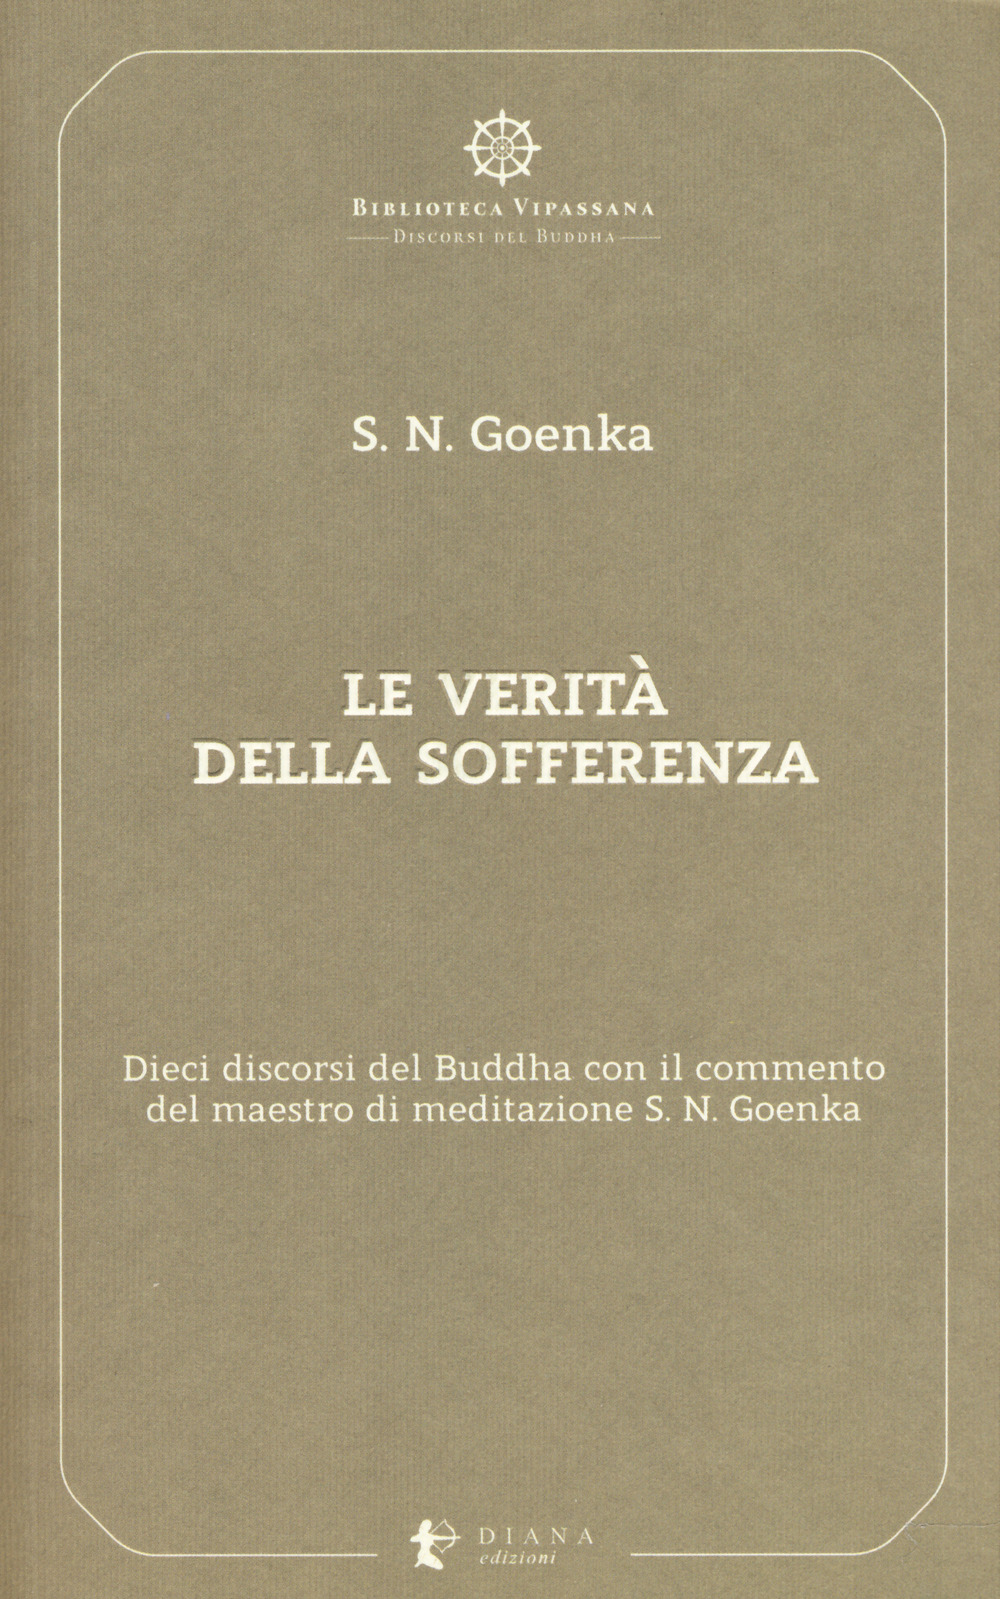 Le verità della sofferenza. Dieci discorsi del Buddha con il commento del maestro di meditazione S. N. Goenka